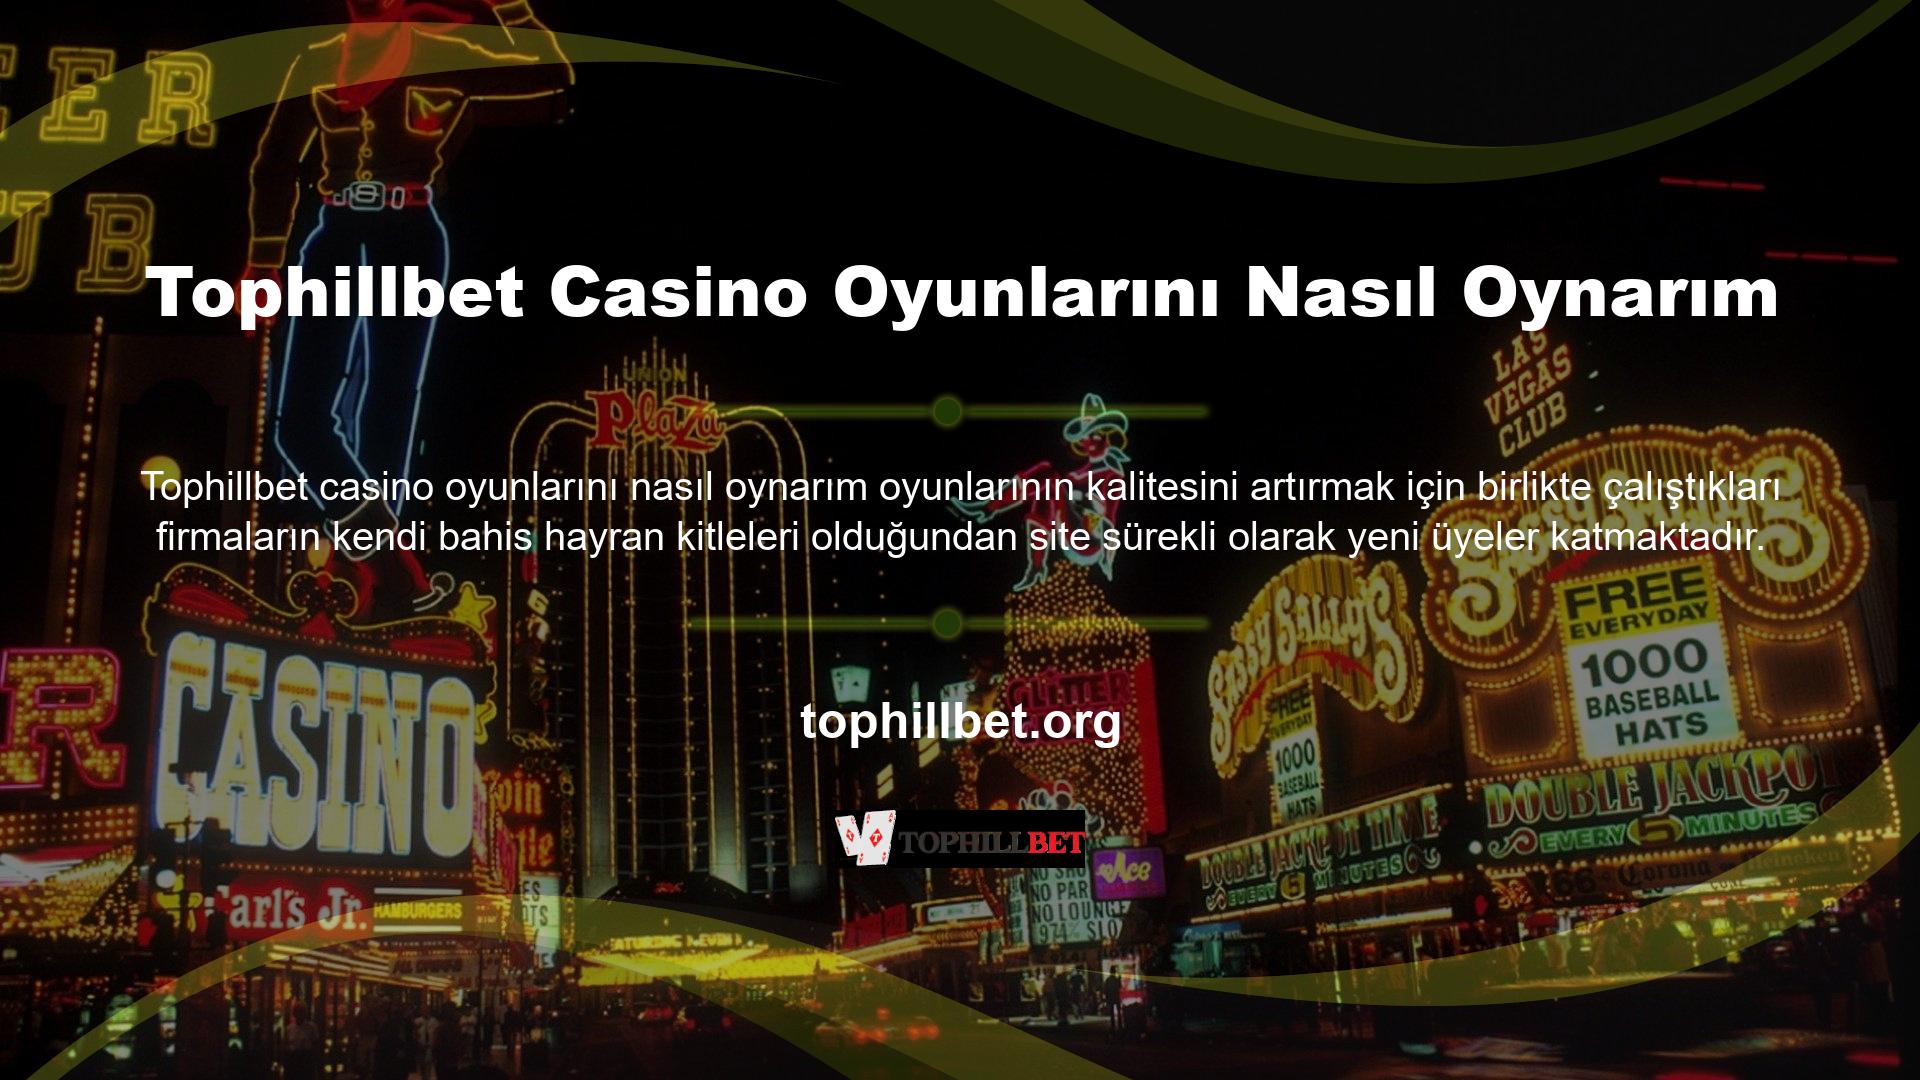 Bahis tutkunları öncelikle siteye üye olup, site veya mobil uygulama üzerinden siteye giriş yapıp “Casino” sekmesine tıklayarak birçok casino oyun seçeneğinden faydalanabilmektedir